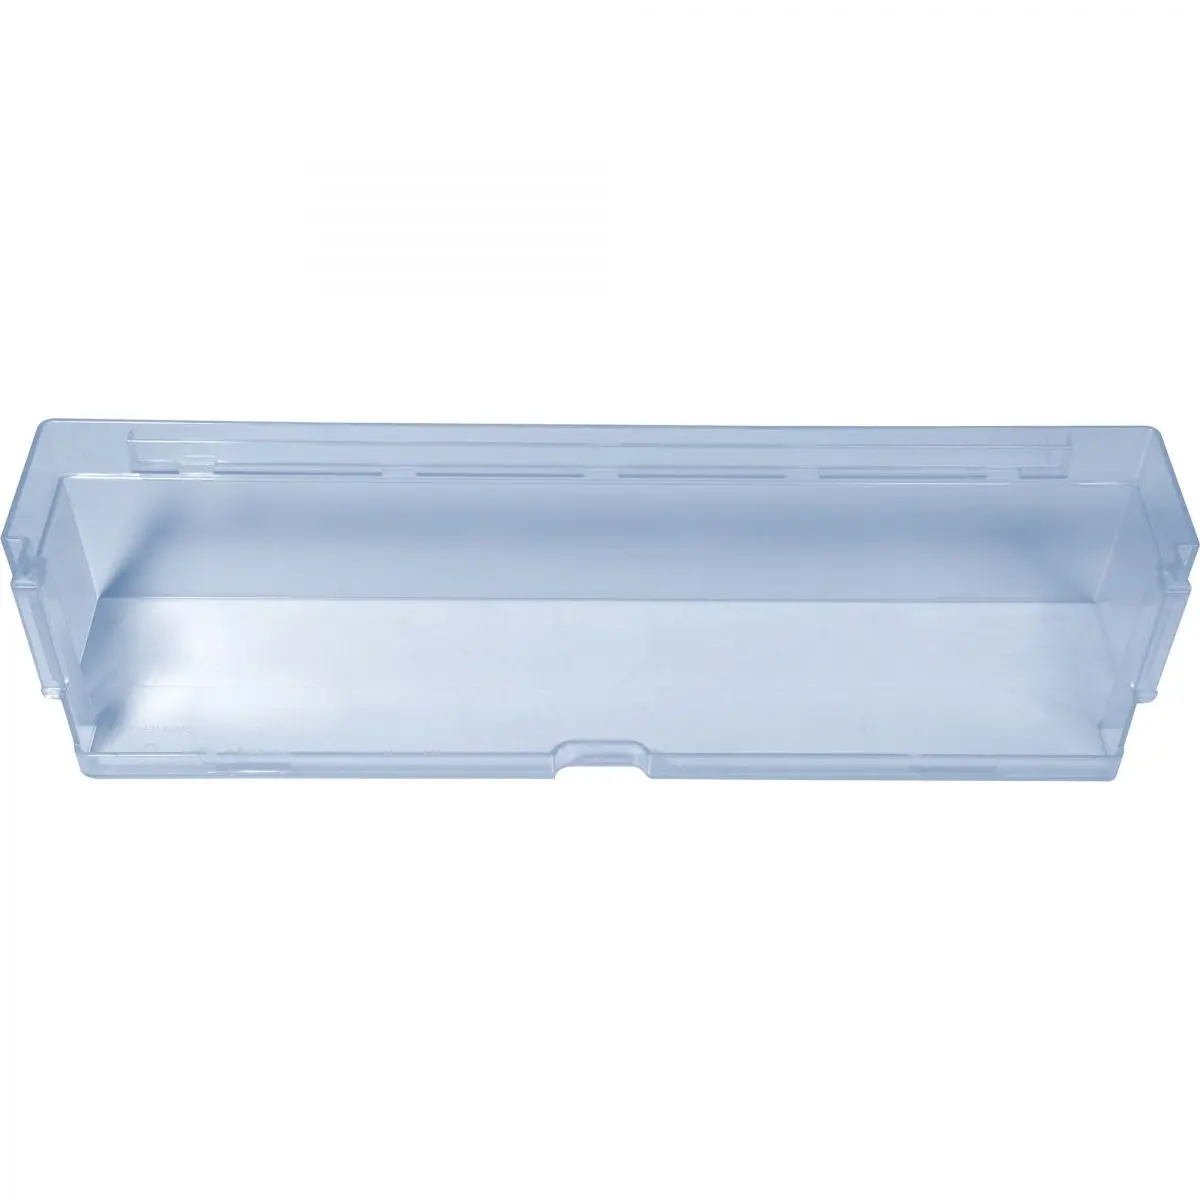 Polička transparentná modrá, š 36 x h 8,8 x v 7,5 cm pre chladničku Dometic RML 9430, 9435